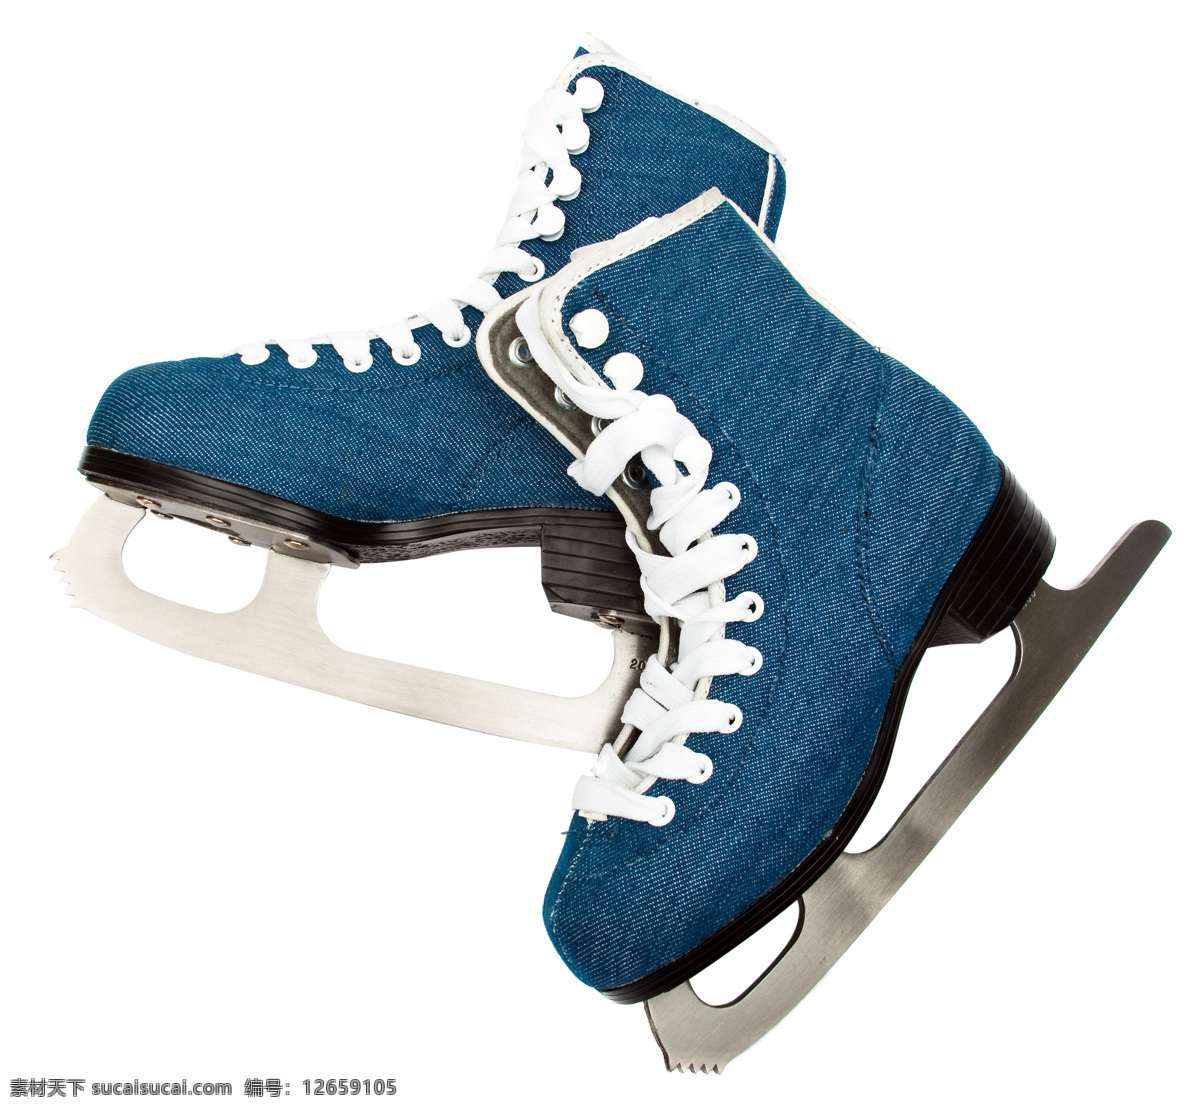 蓝色 溜冰鞋 蓝色溜冰鞋 鞋子 体育用品 体育运动 生活百科